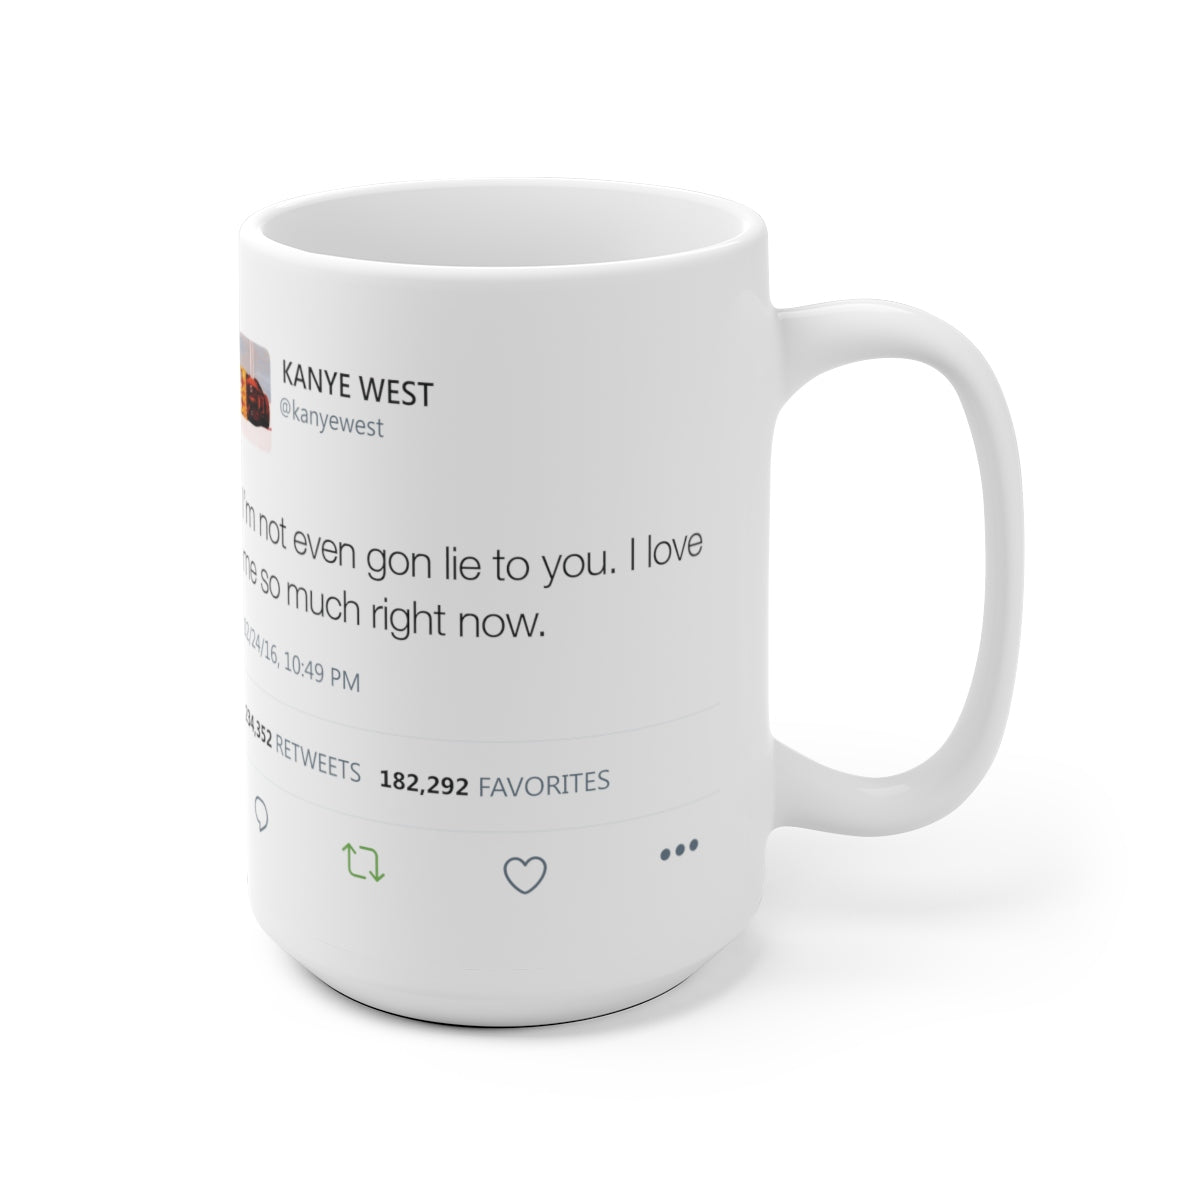 I'm Not Even Gon Lie To You I Love Me So Much Right Now - Kanye West Tweet Mug-Archethype